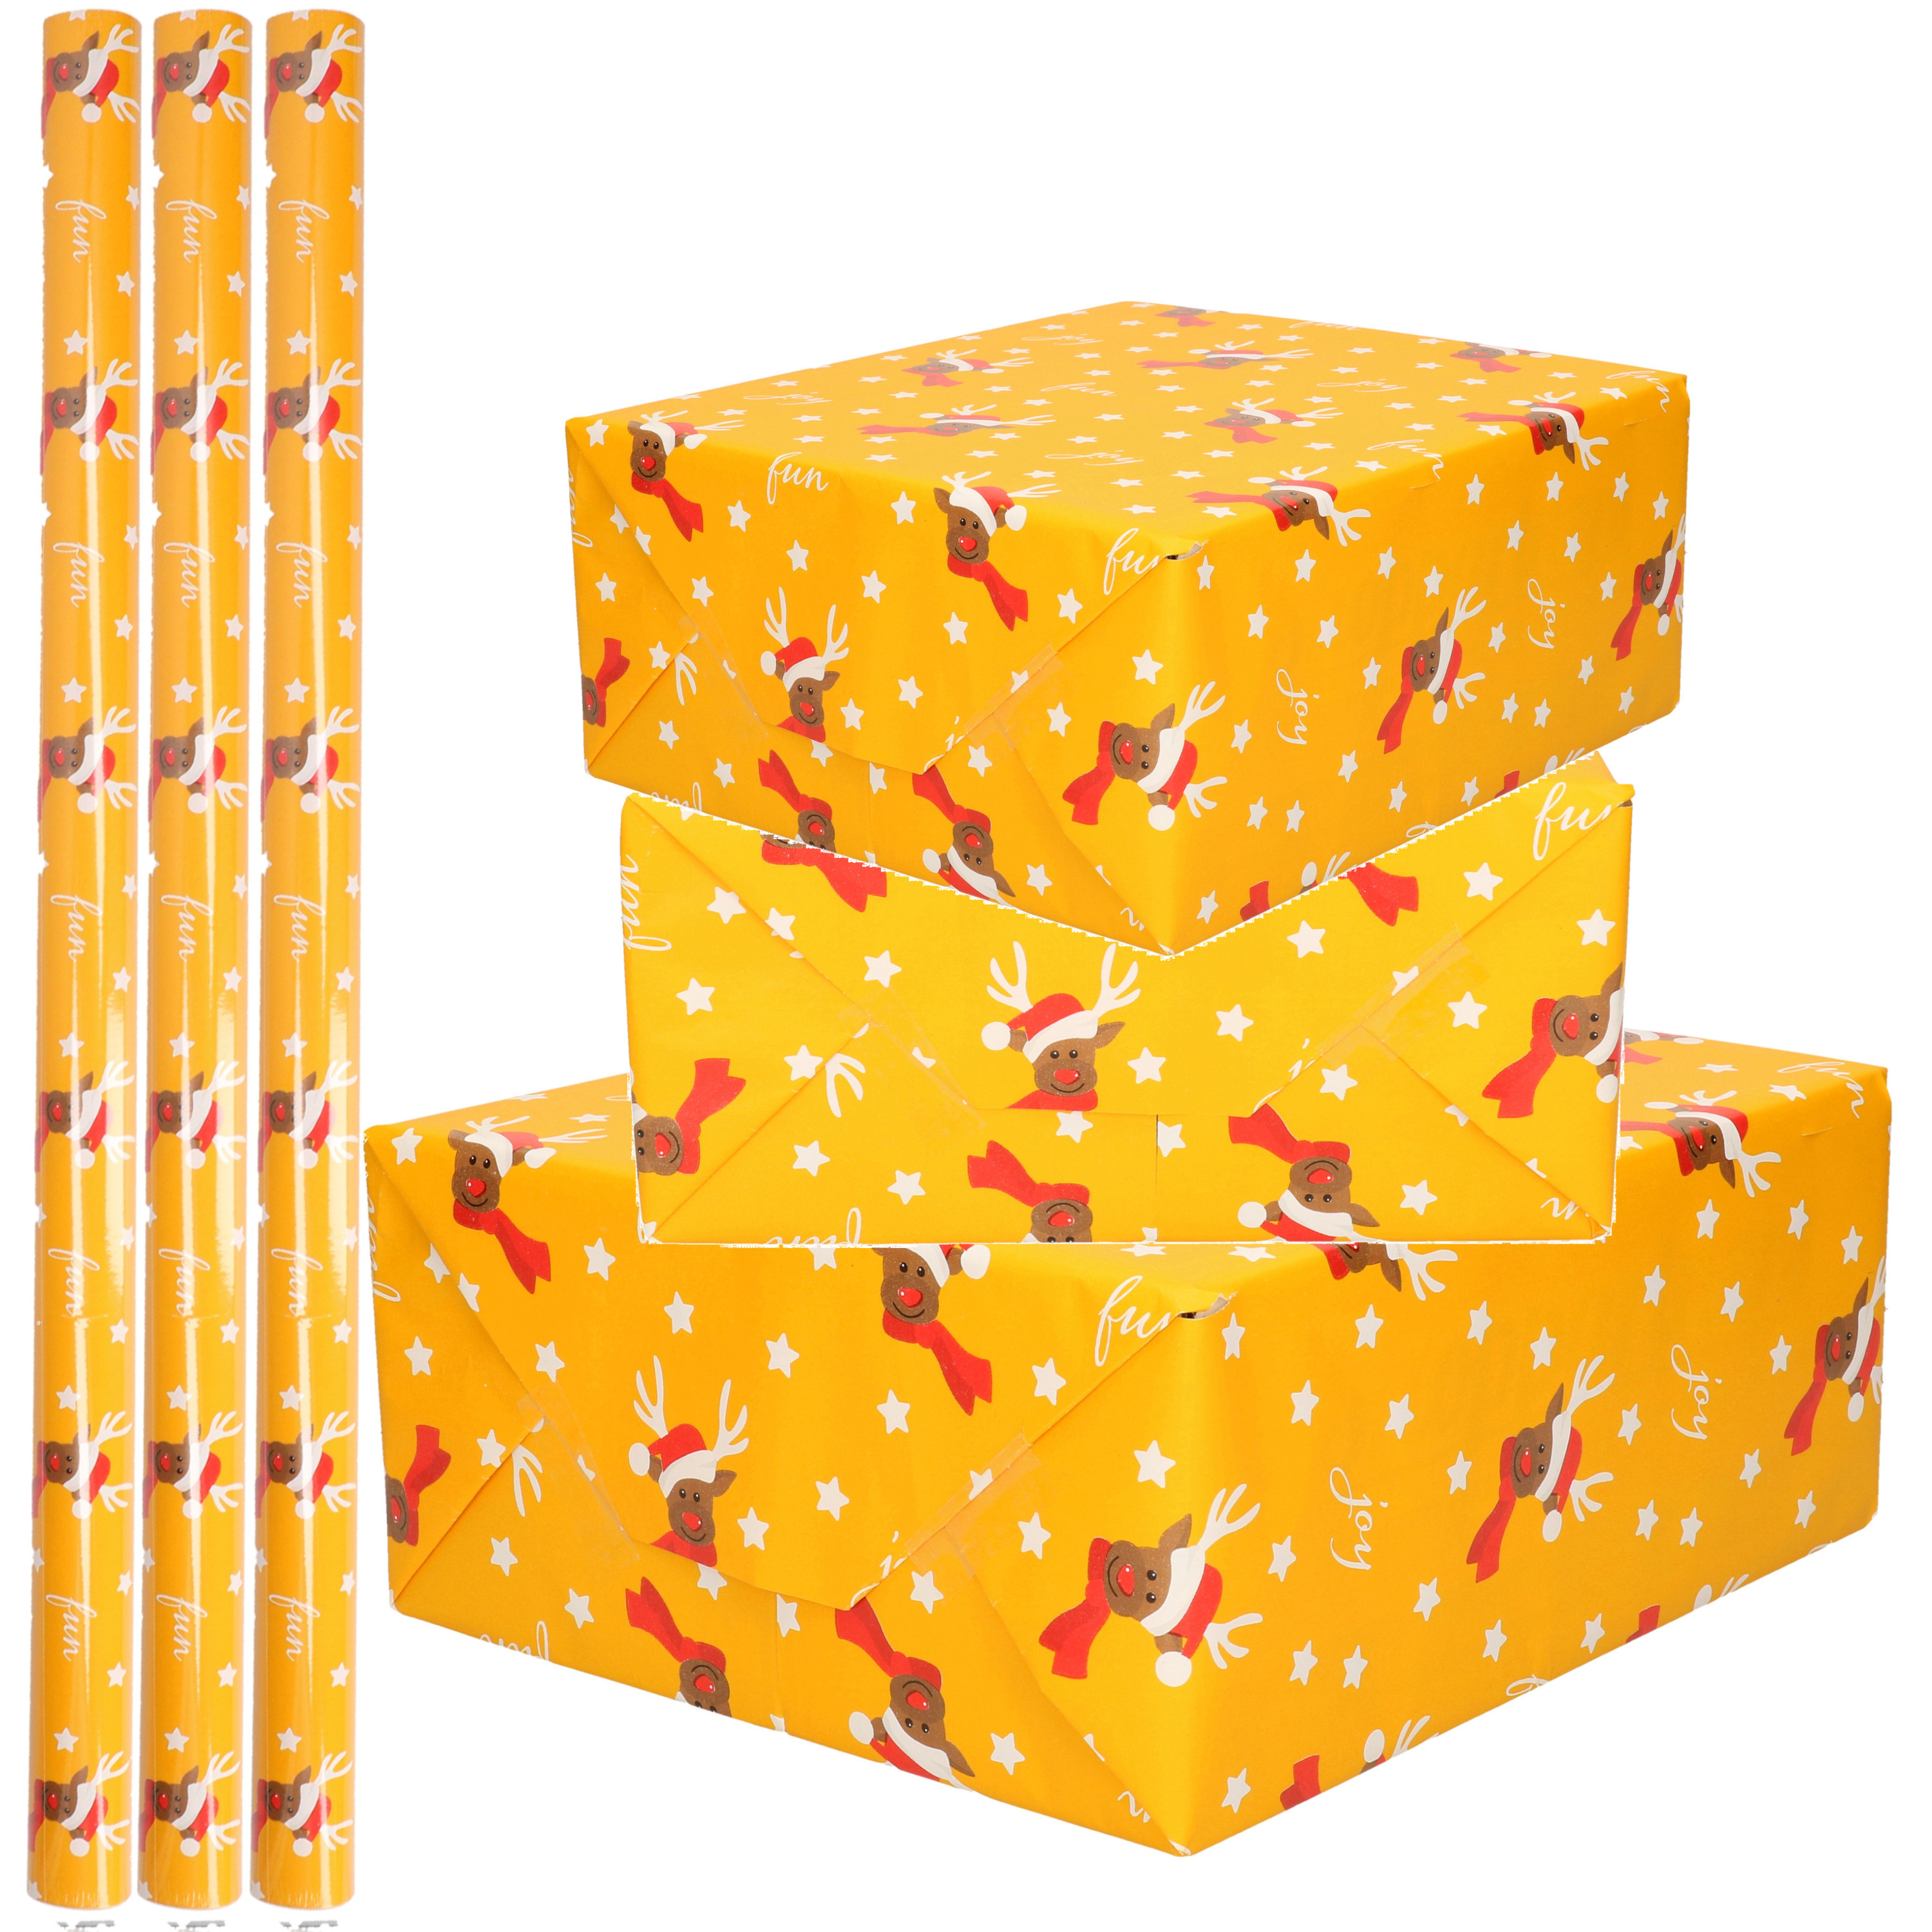 3x Rollen Kerst inpakpapier/cadeaupapier oker geel/rendieren fun 2,5 x 0,7 meter